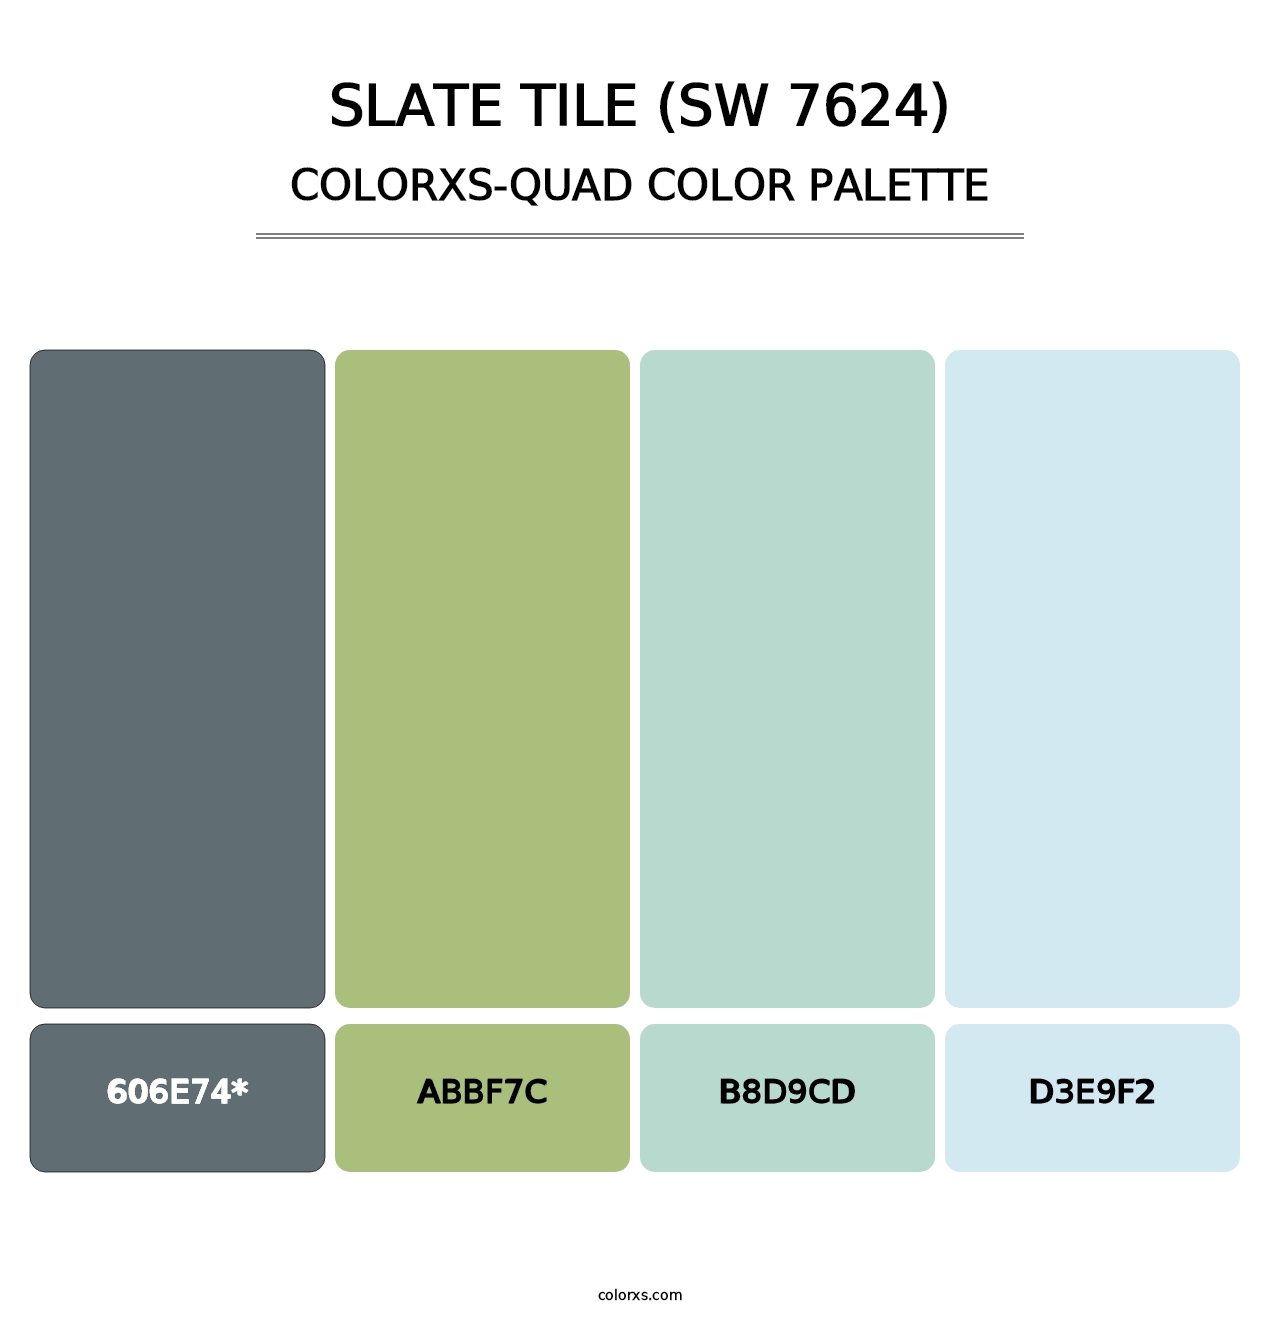 Slate Tile (SW 7624) - Colorxs Quad Palette